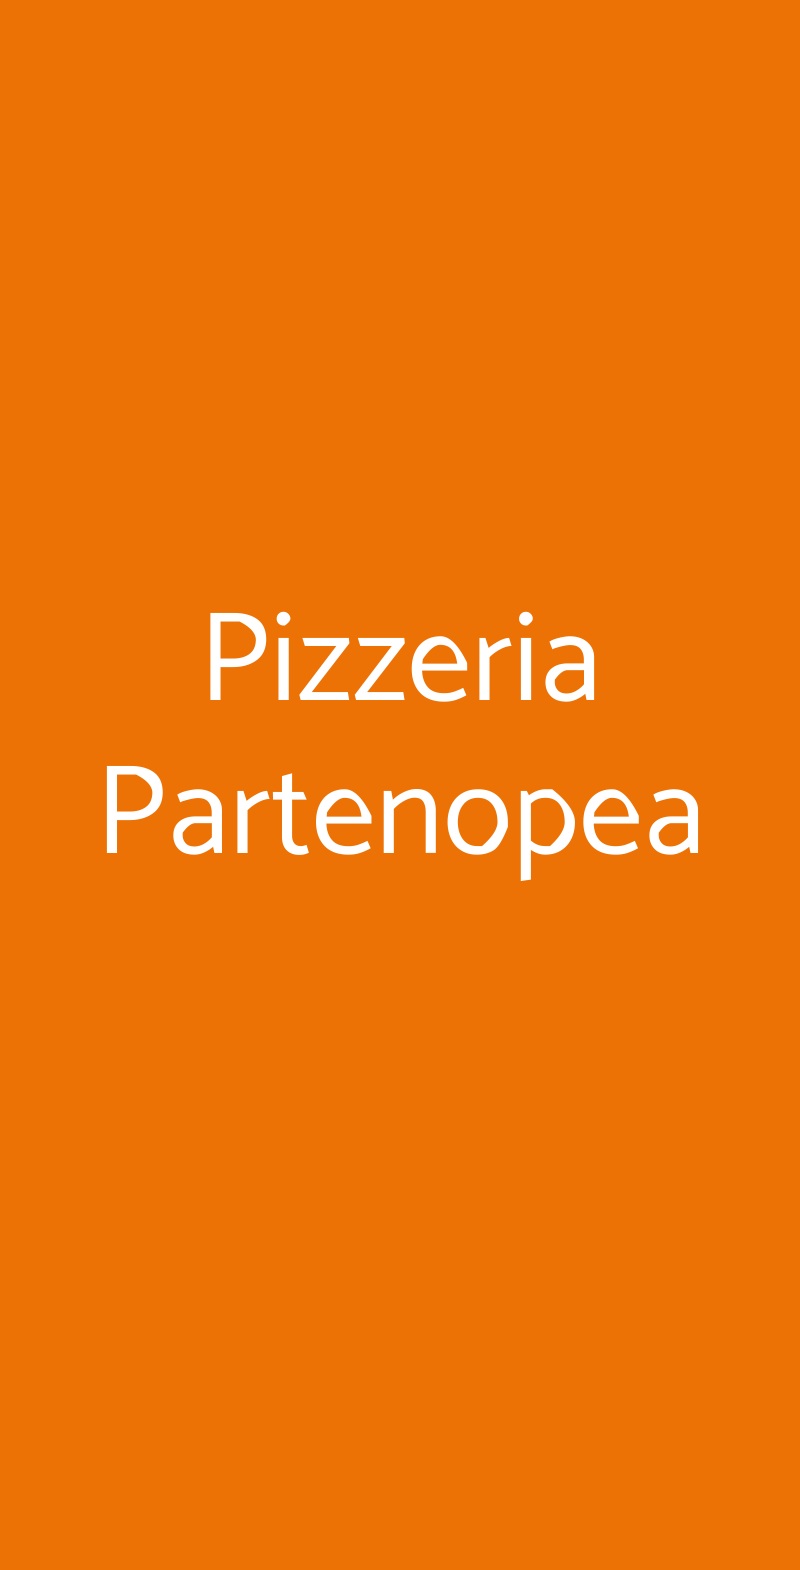 Pizzeria Partenopea Napoli menù 1 pagina